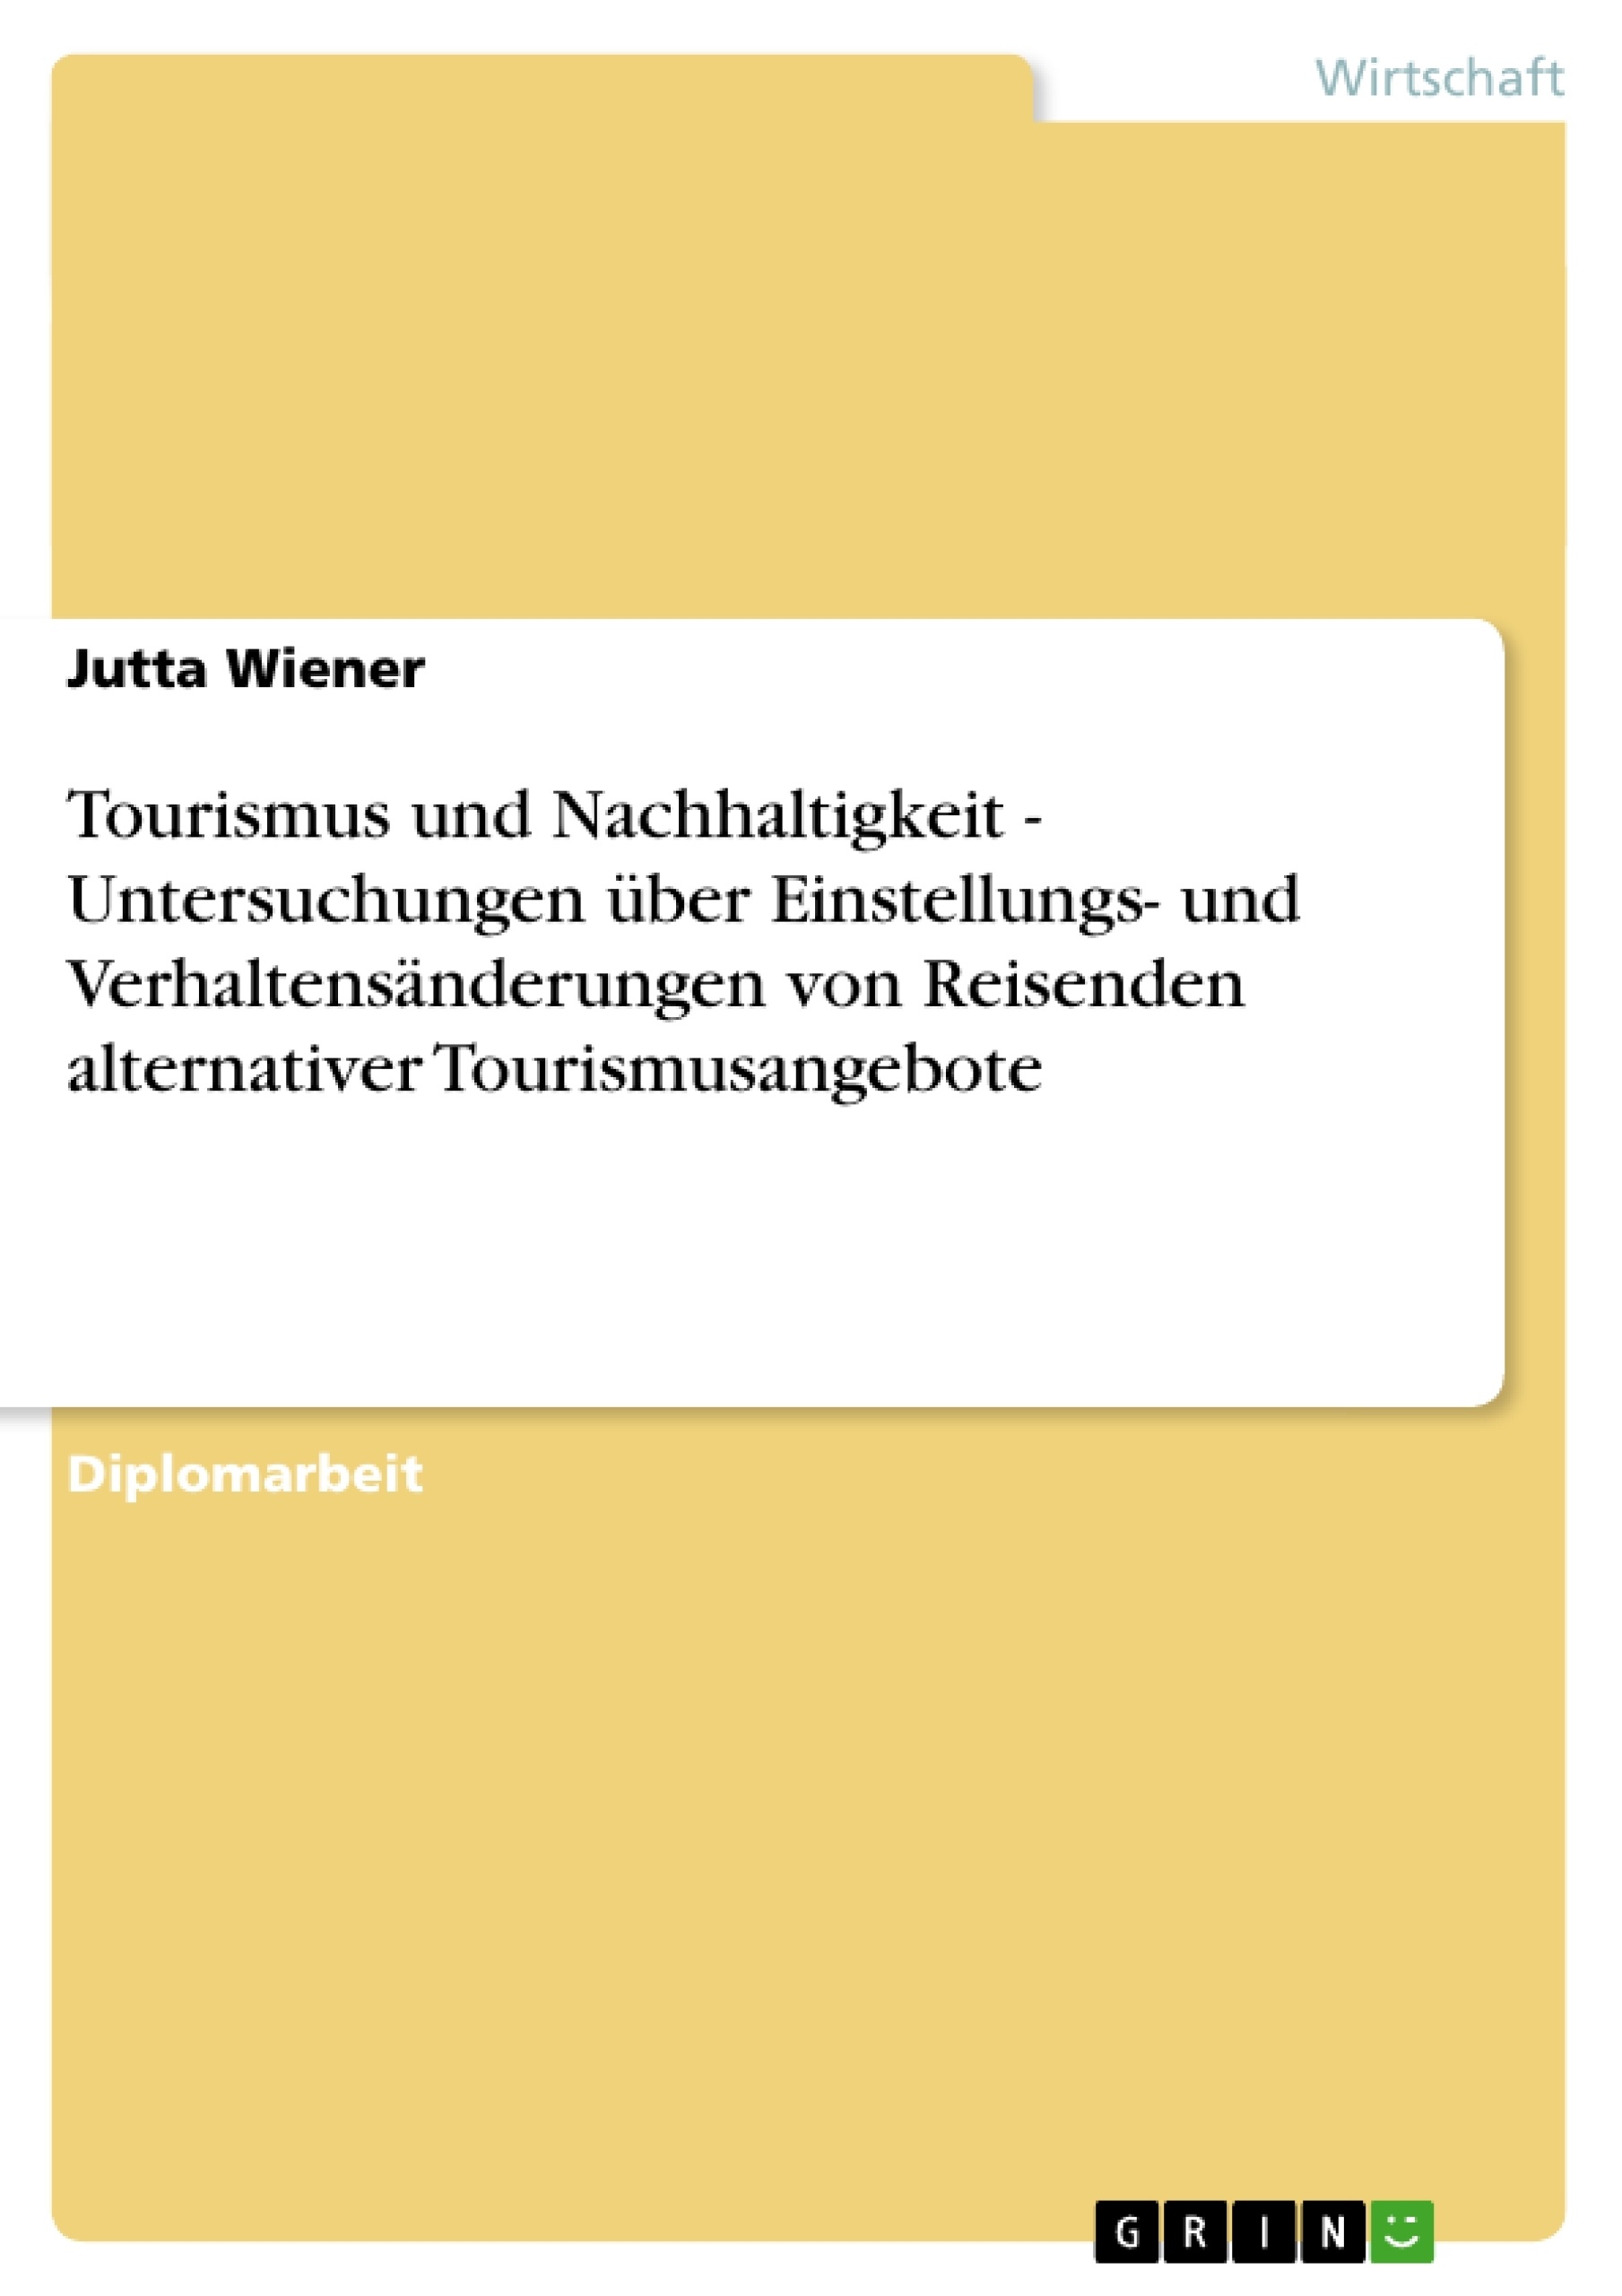 Titel: Tourismus und Nachhaltigkeit - Untersuchungen über Einstellungs- und Verhaltensänderungen von Reisenden alternativer Tourismusangebote